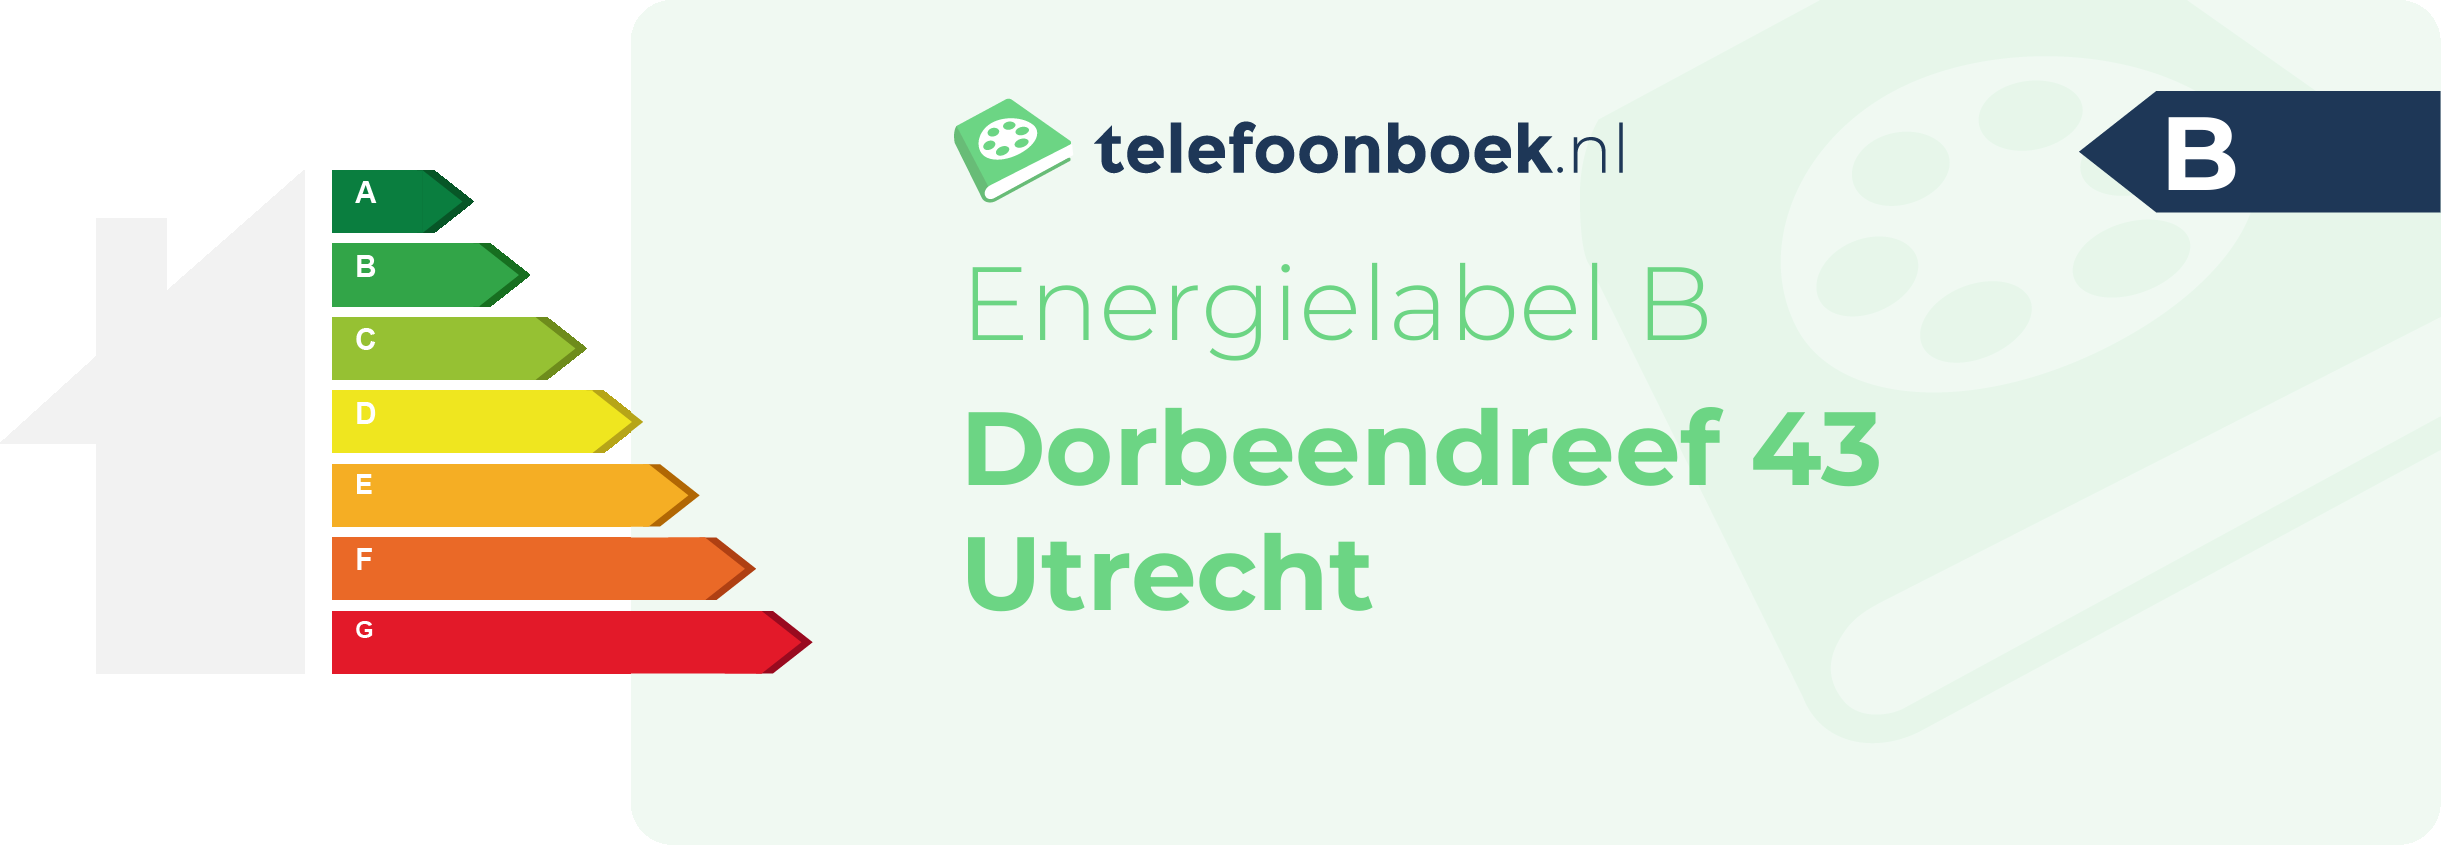 Energielabel Dorbeendreef 43 Utrecht